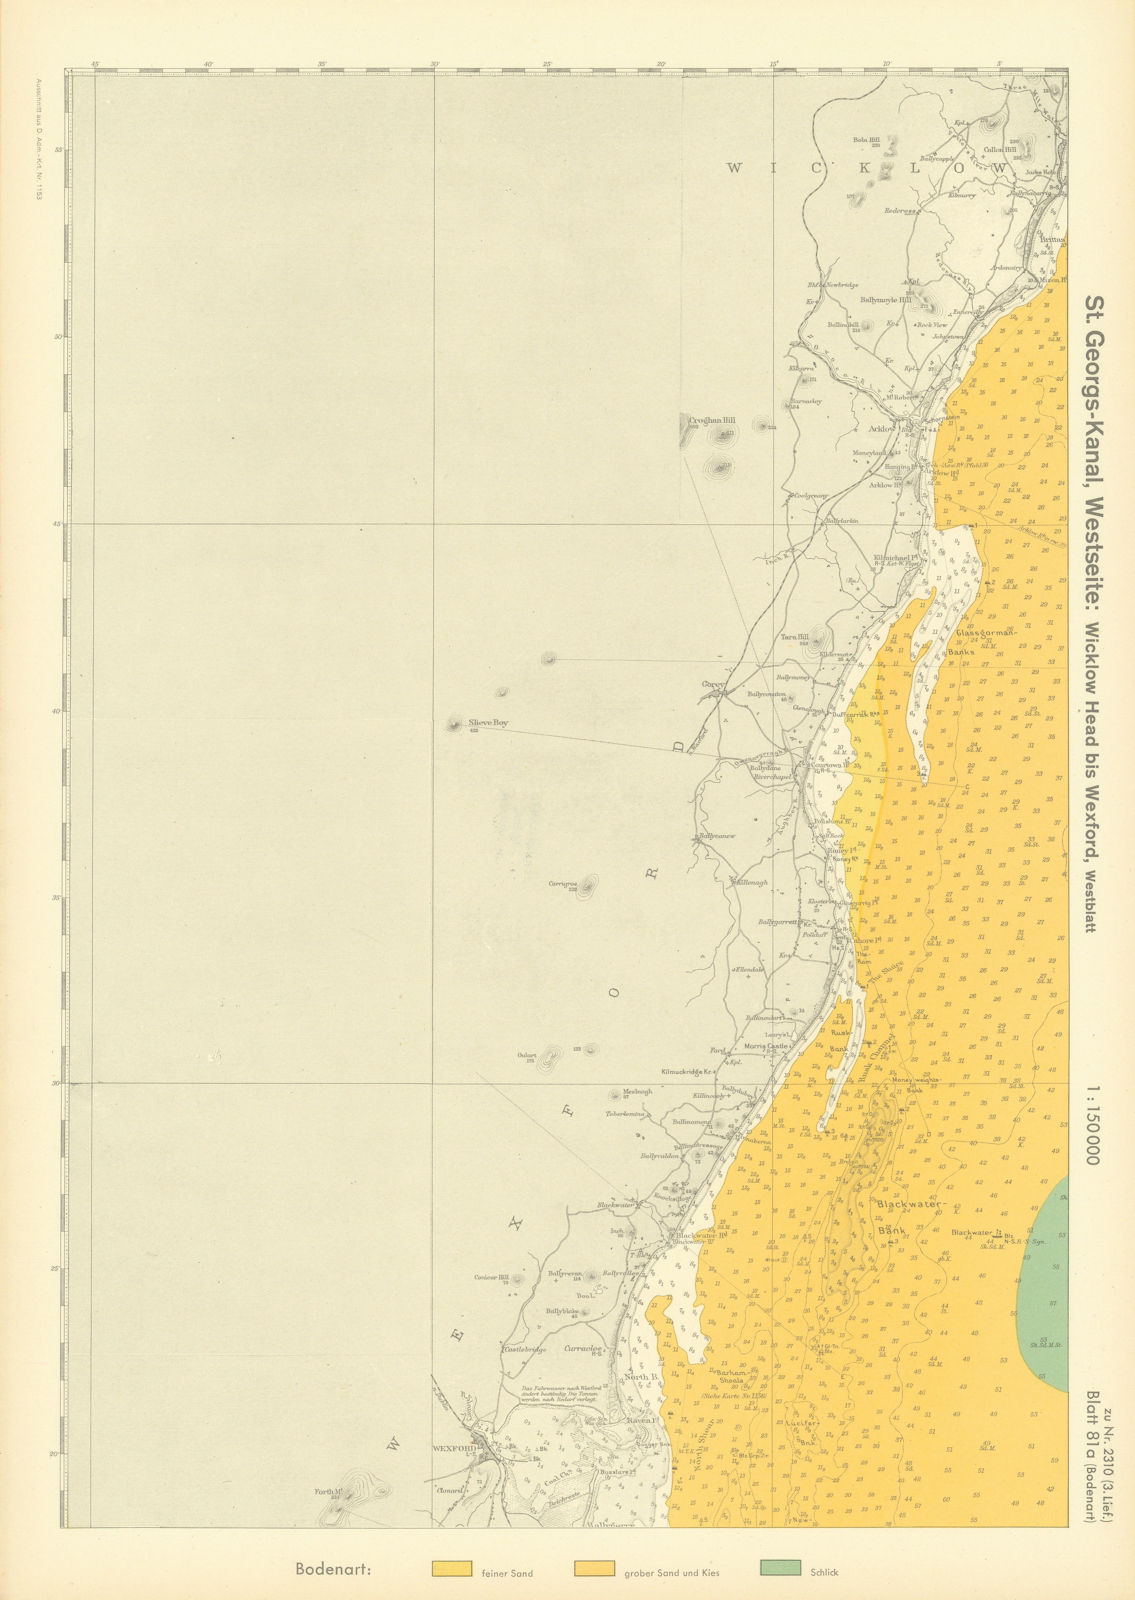 81a. Ireland coast. County Wicklow & Wexford. KRIEGSMARINE Nazi map 1940